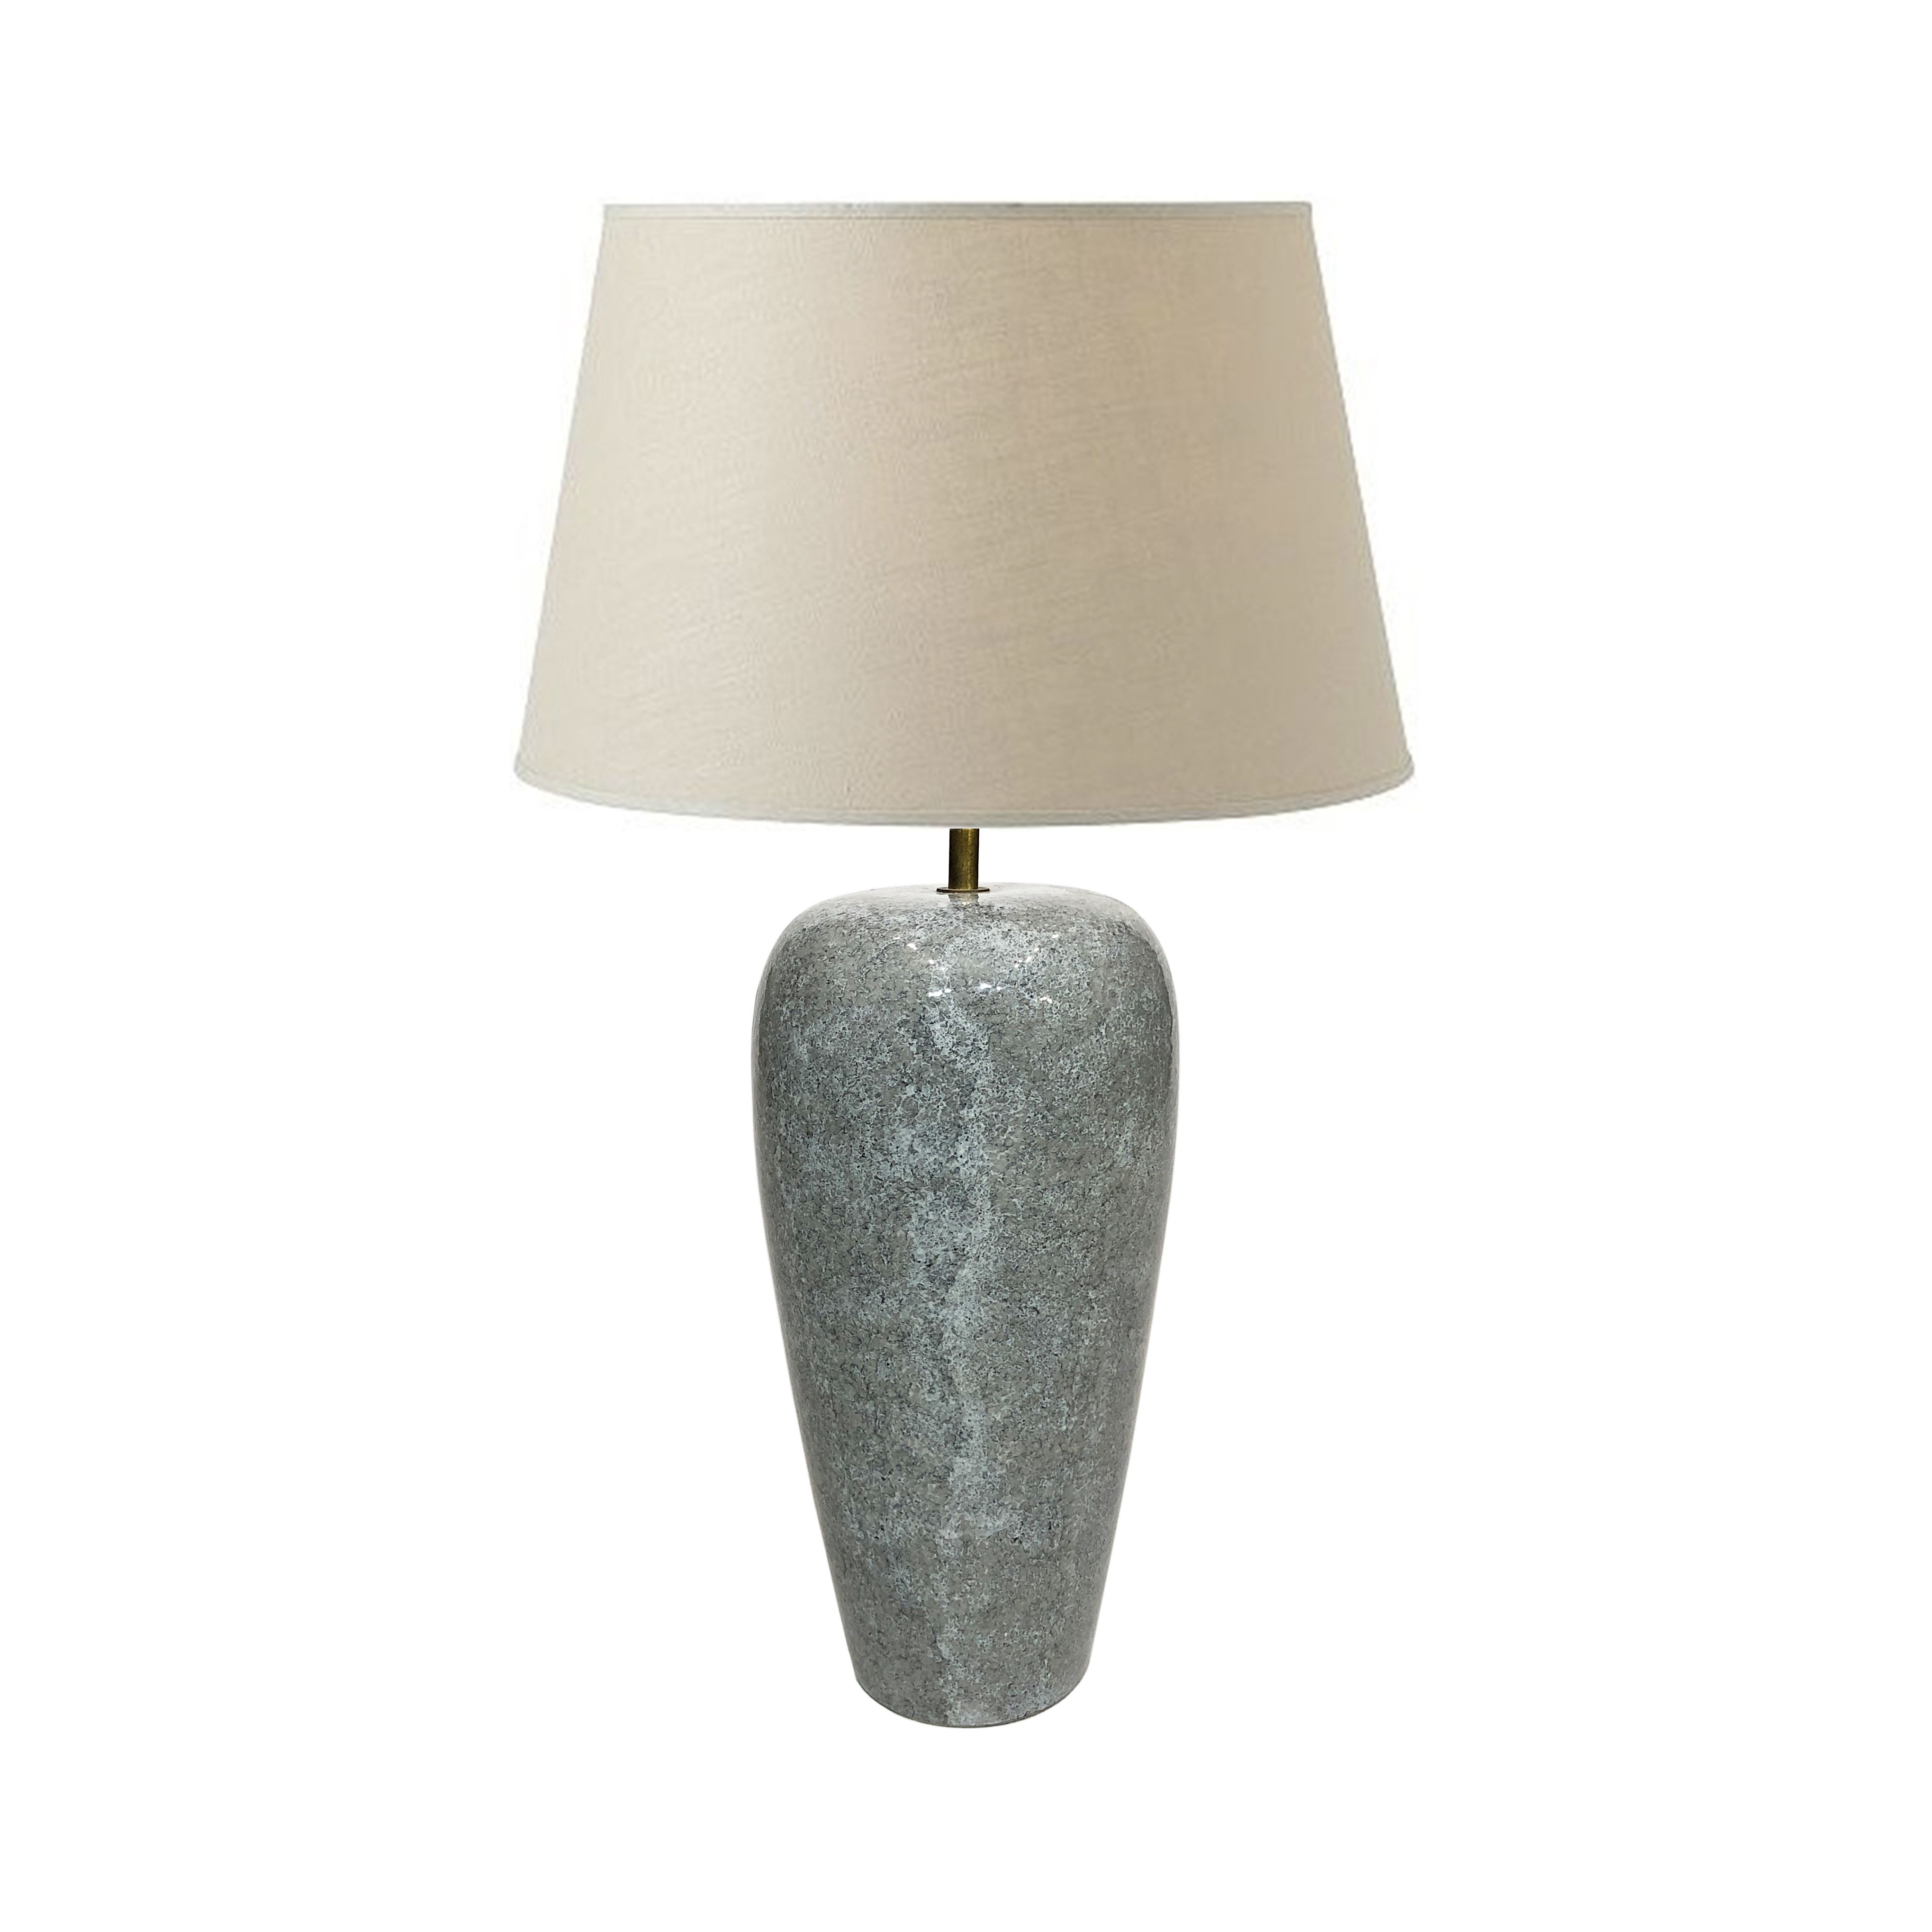 Ceramic Table Lamp With Granite Effect, Granite Table Lamp